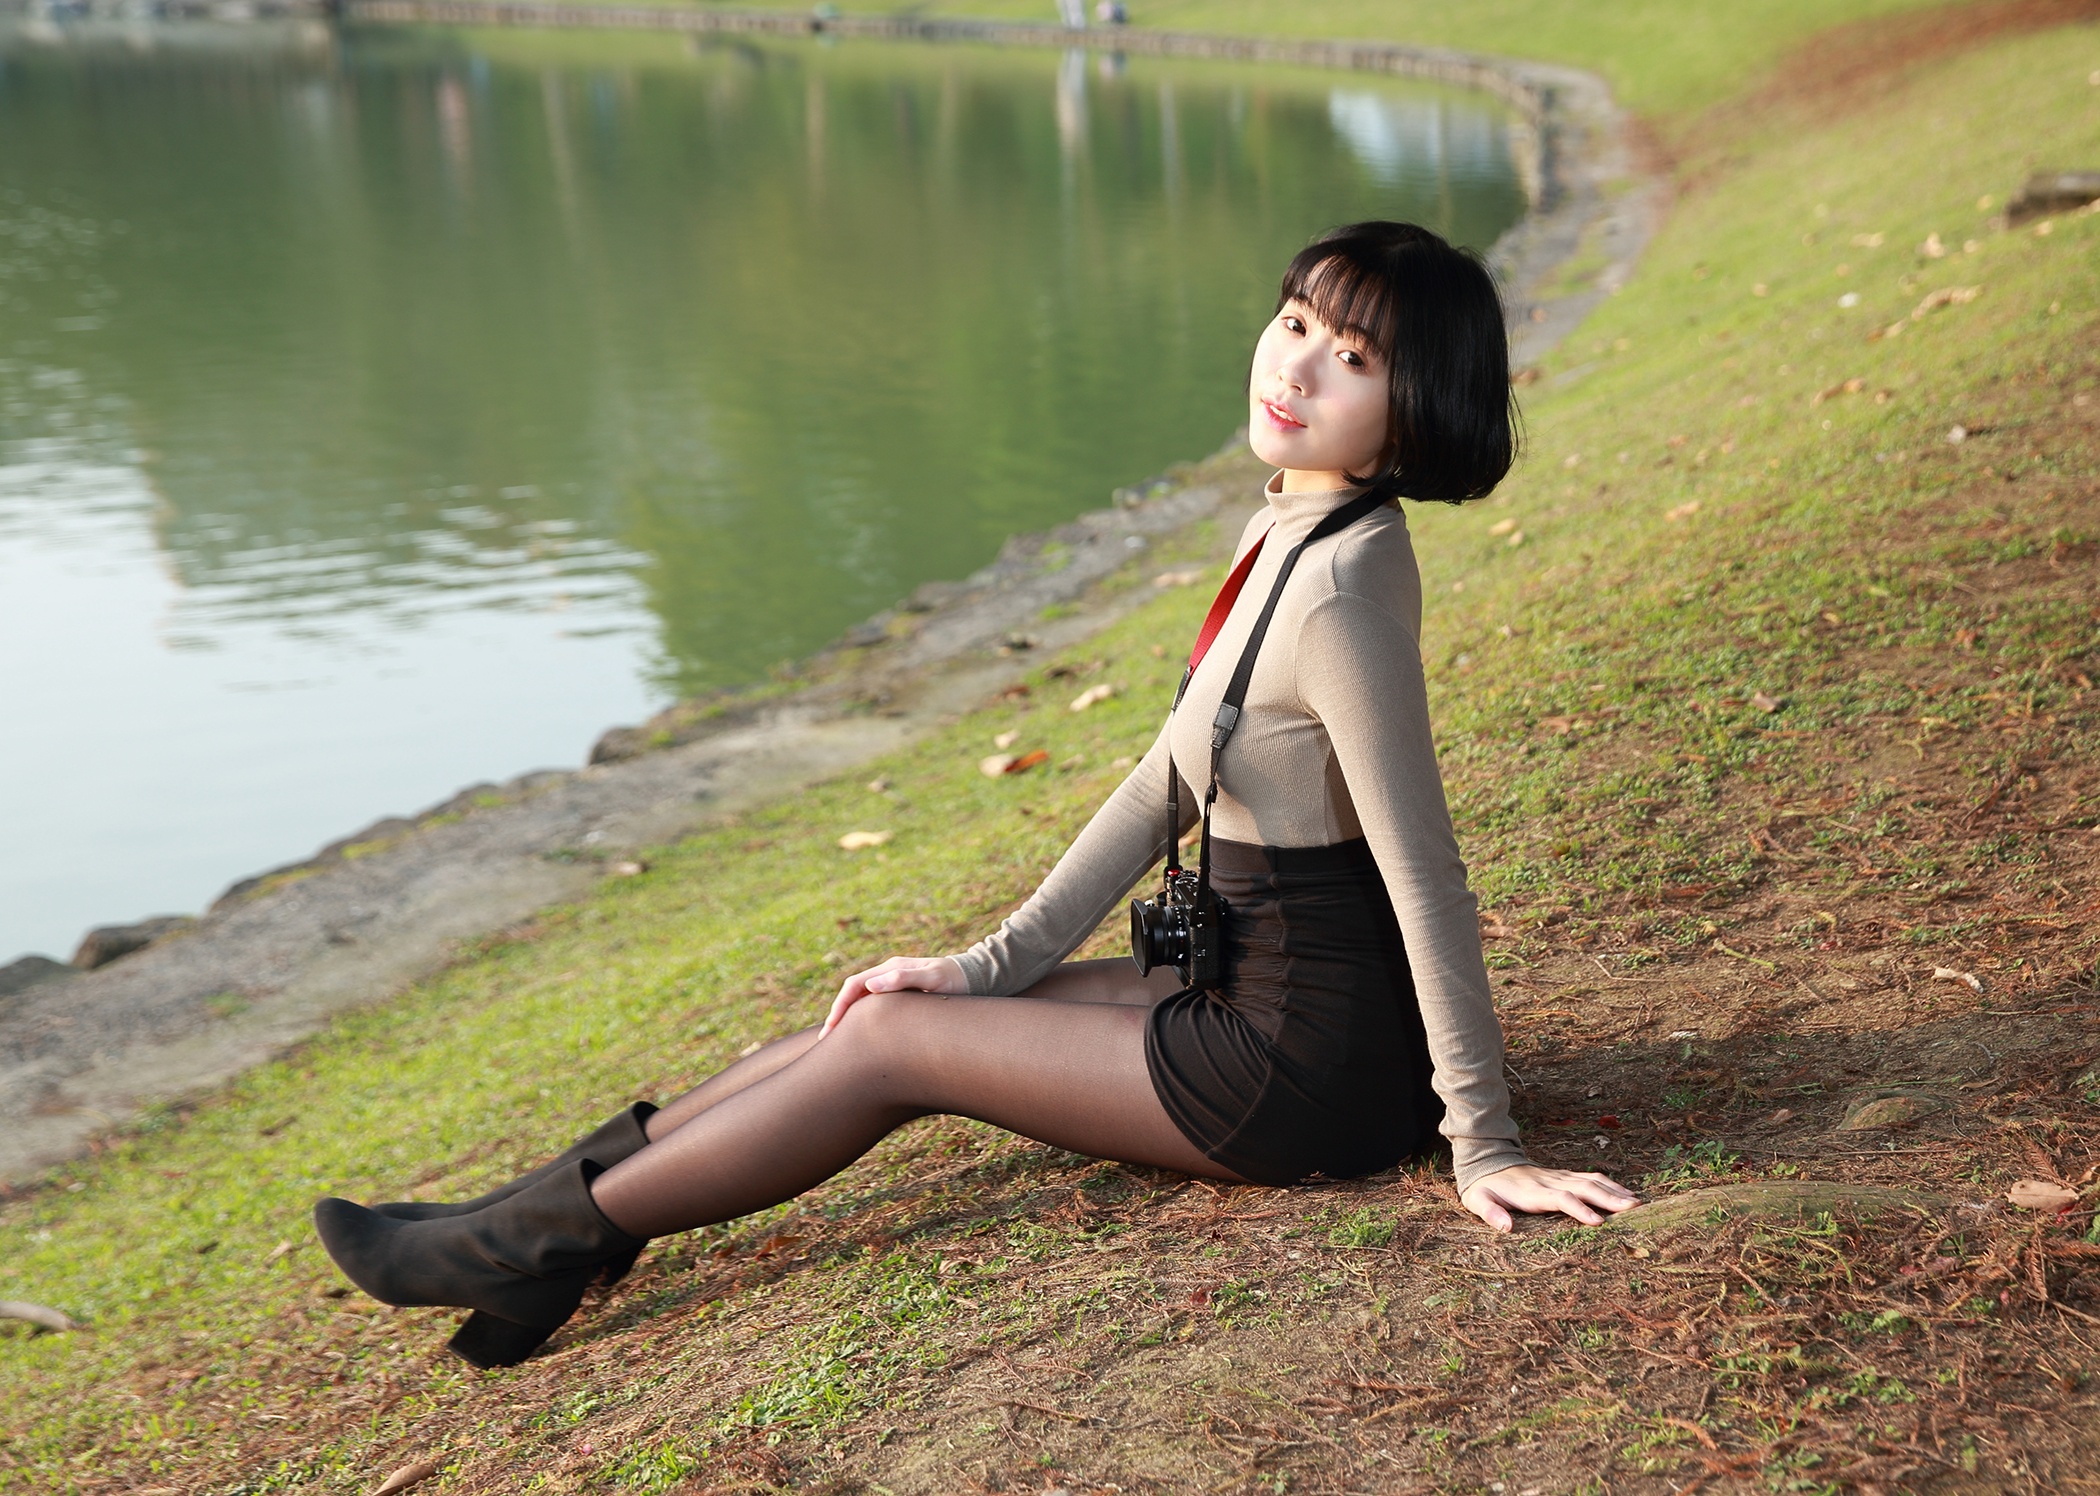 Asian Model Women Short Hair Dark Hair Sitting Lake Shore Grass Ankle Boots Long Sleeves Skirt Camer 2100x1496